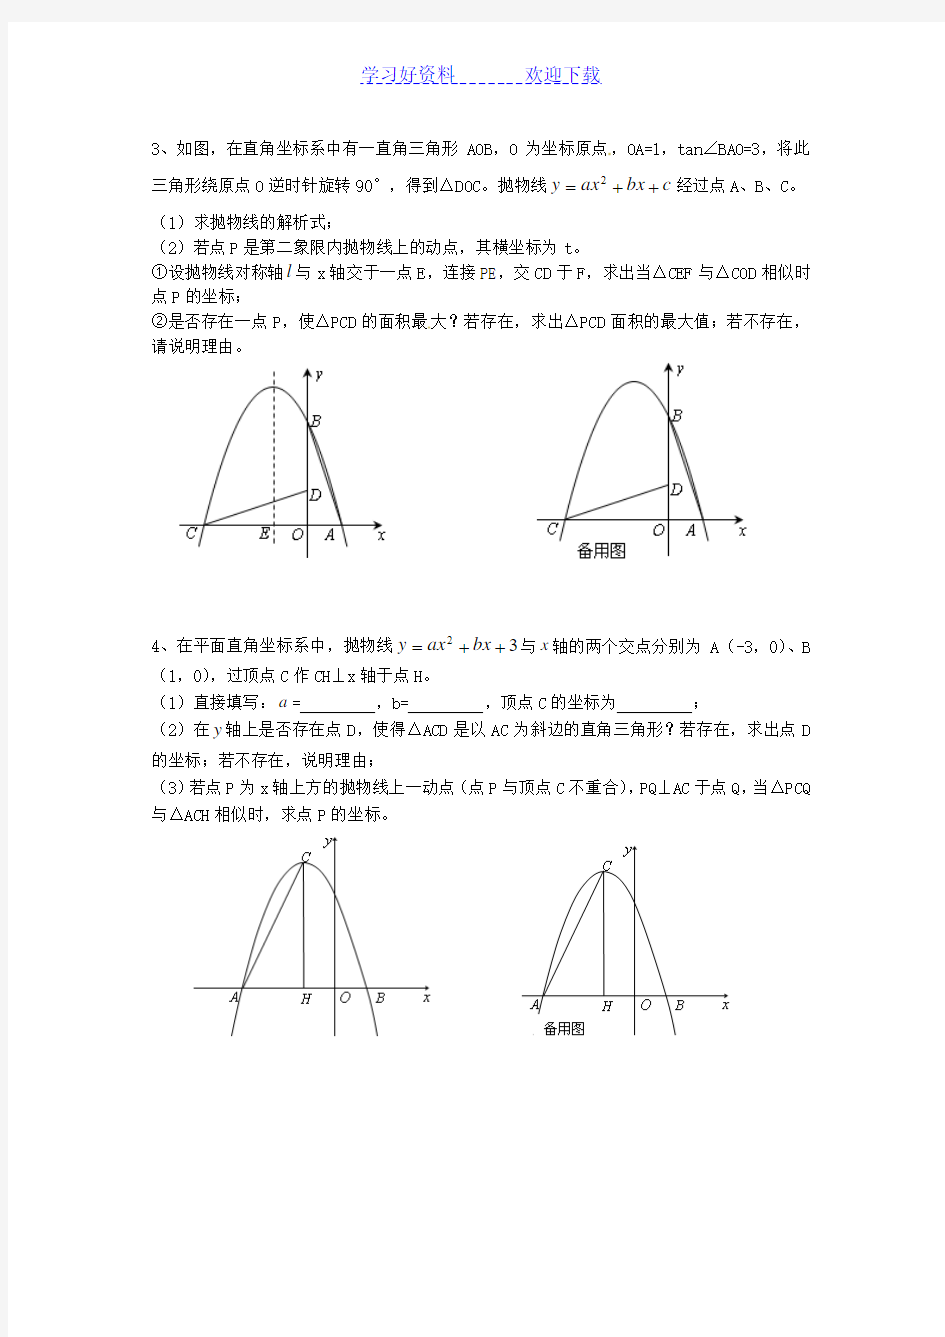 二次函数和相似三角形的综合应用